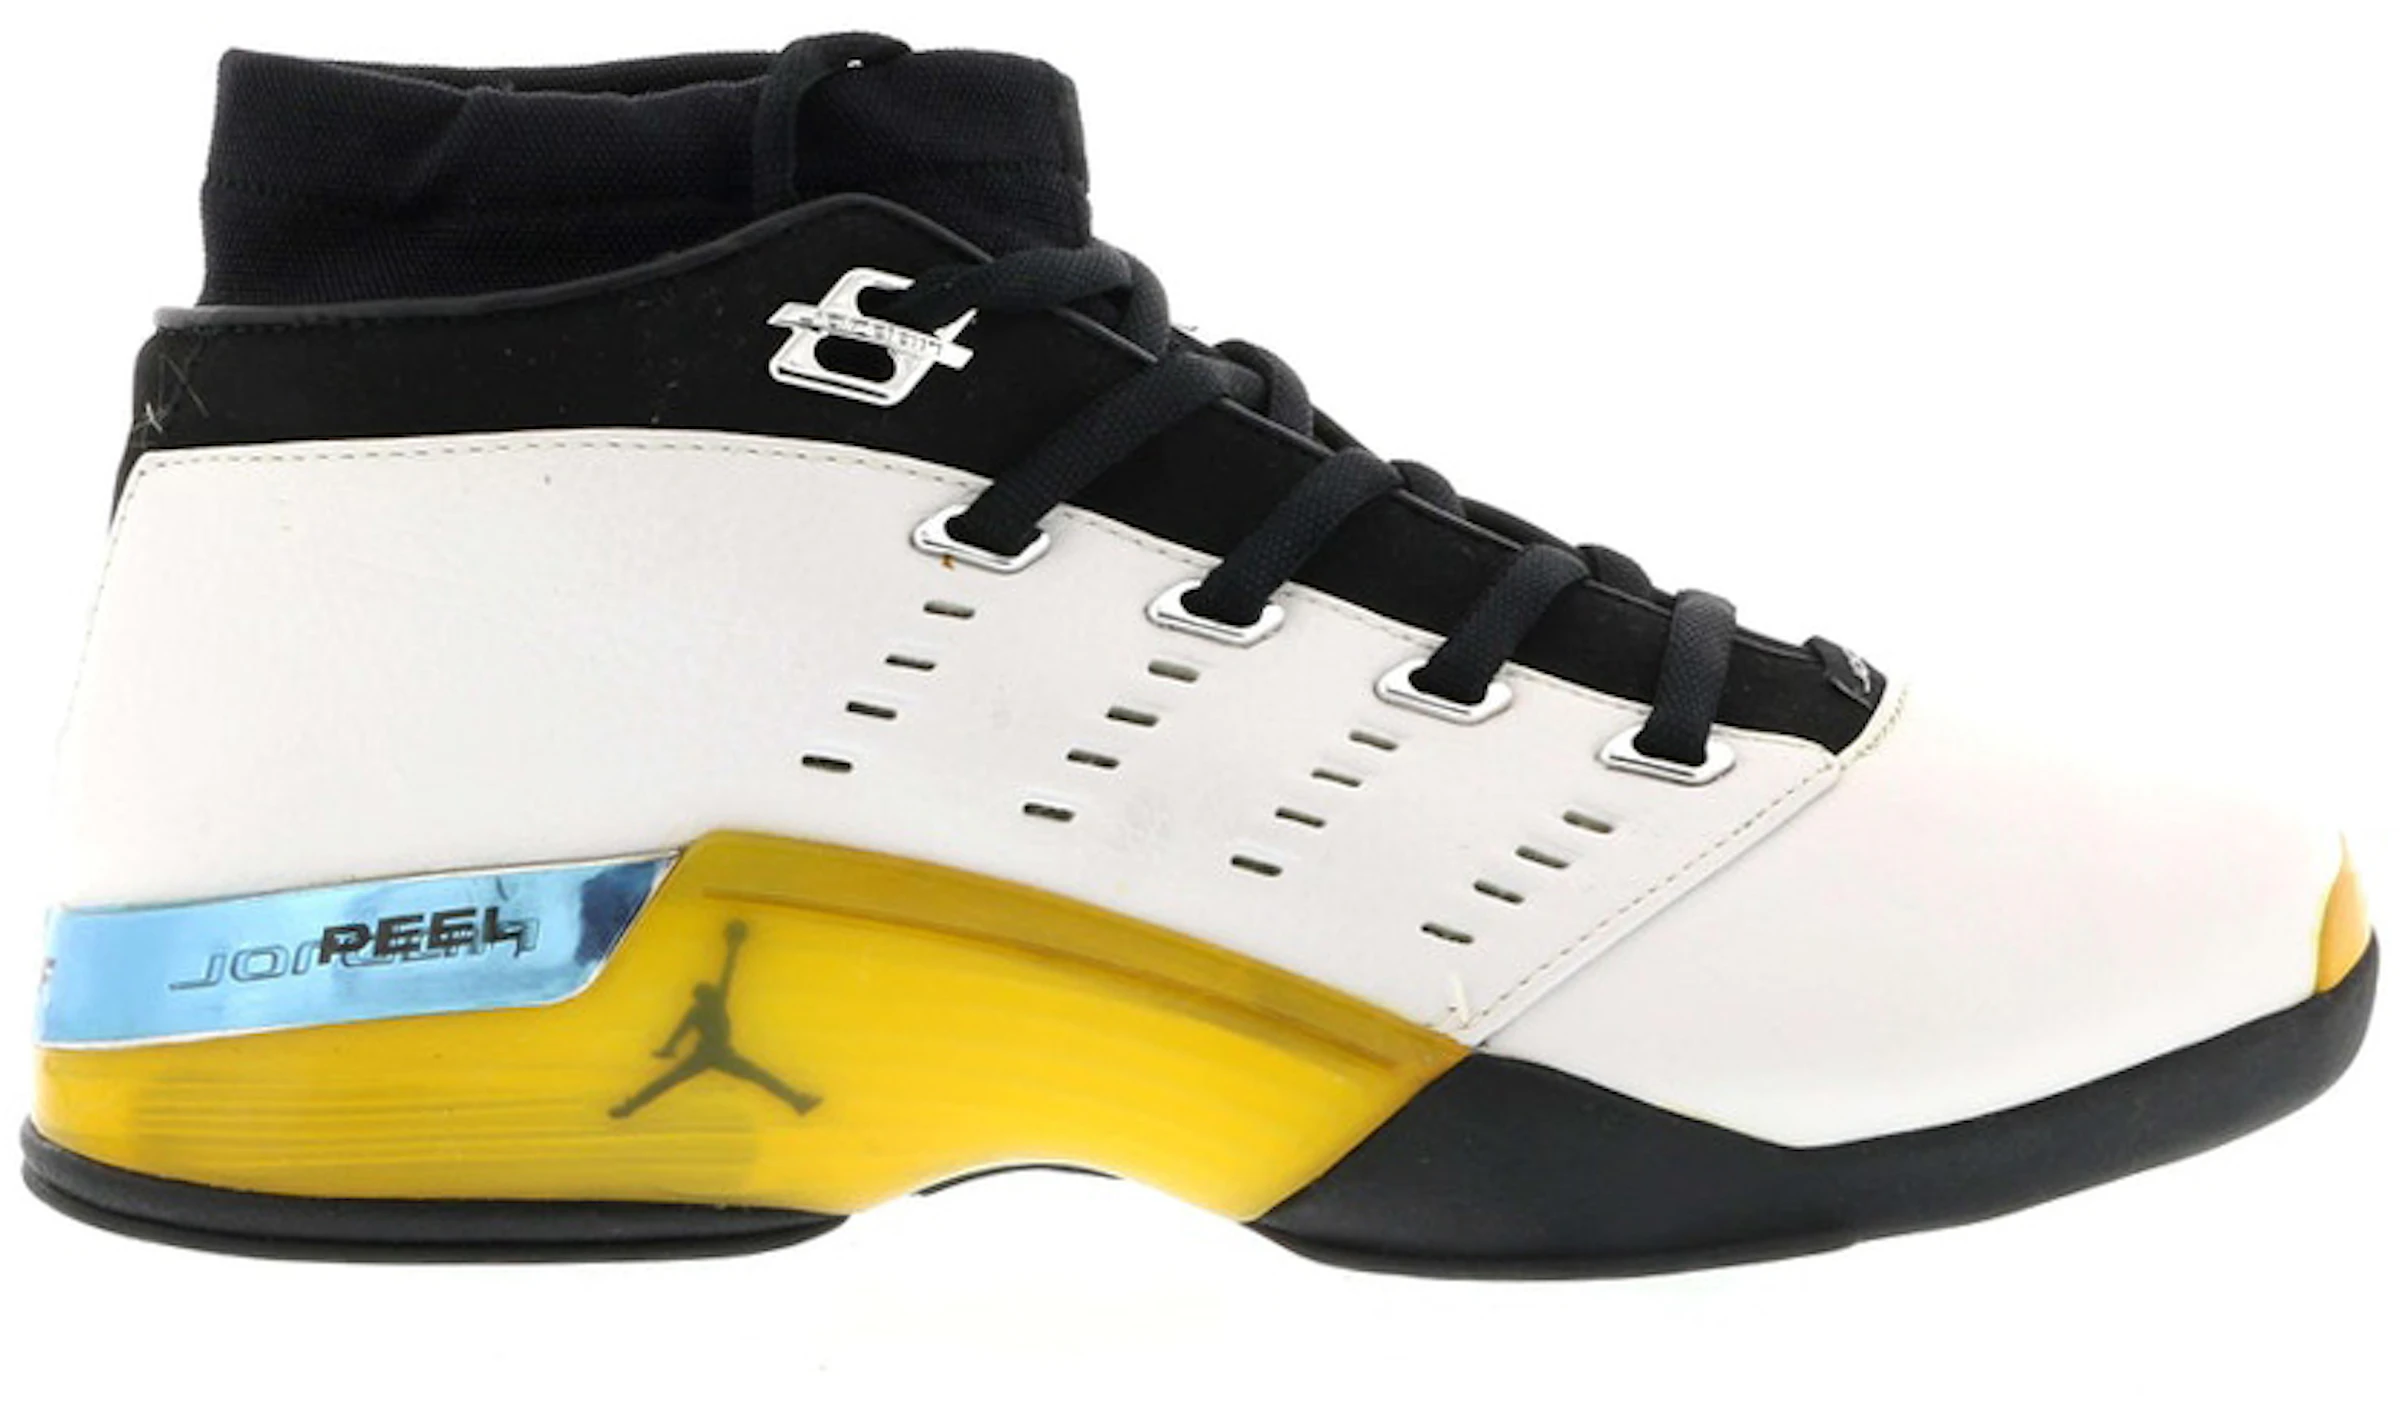 Compra Jordan 17 Calzado y sneakers nuevos - StockX